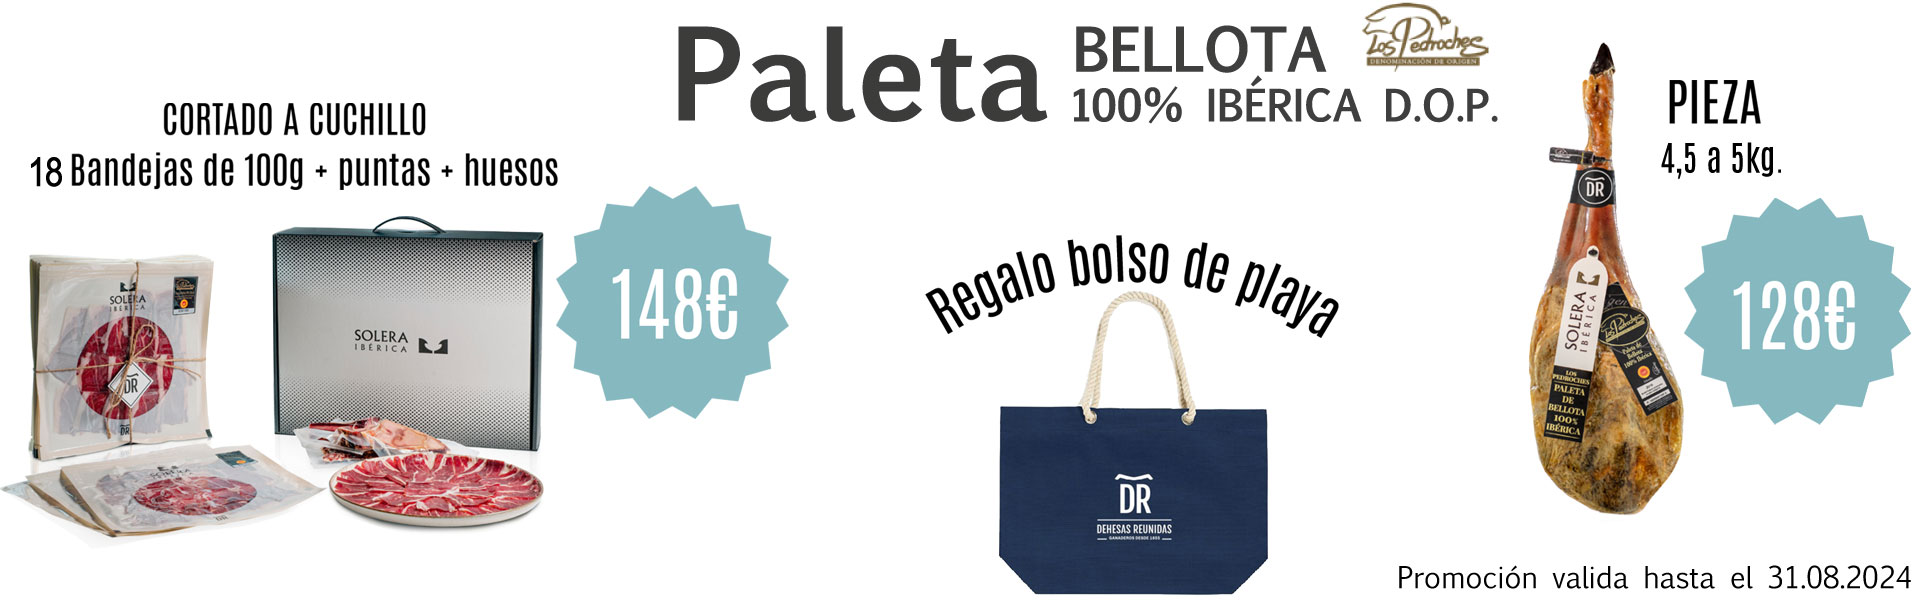 Paleta de Bellota 100% Ibérica